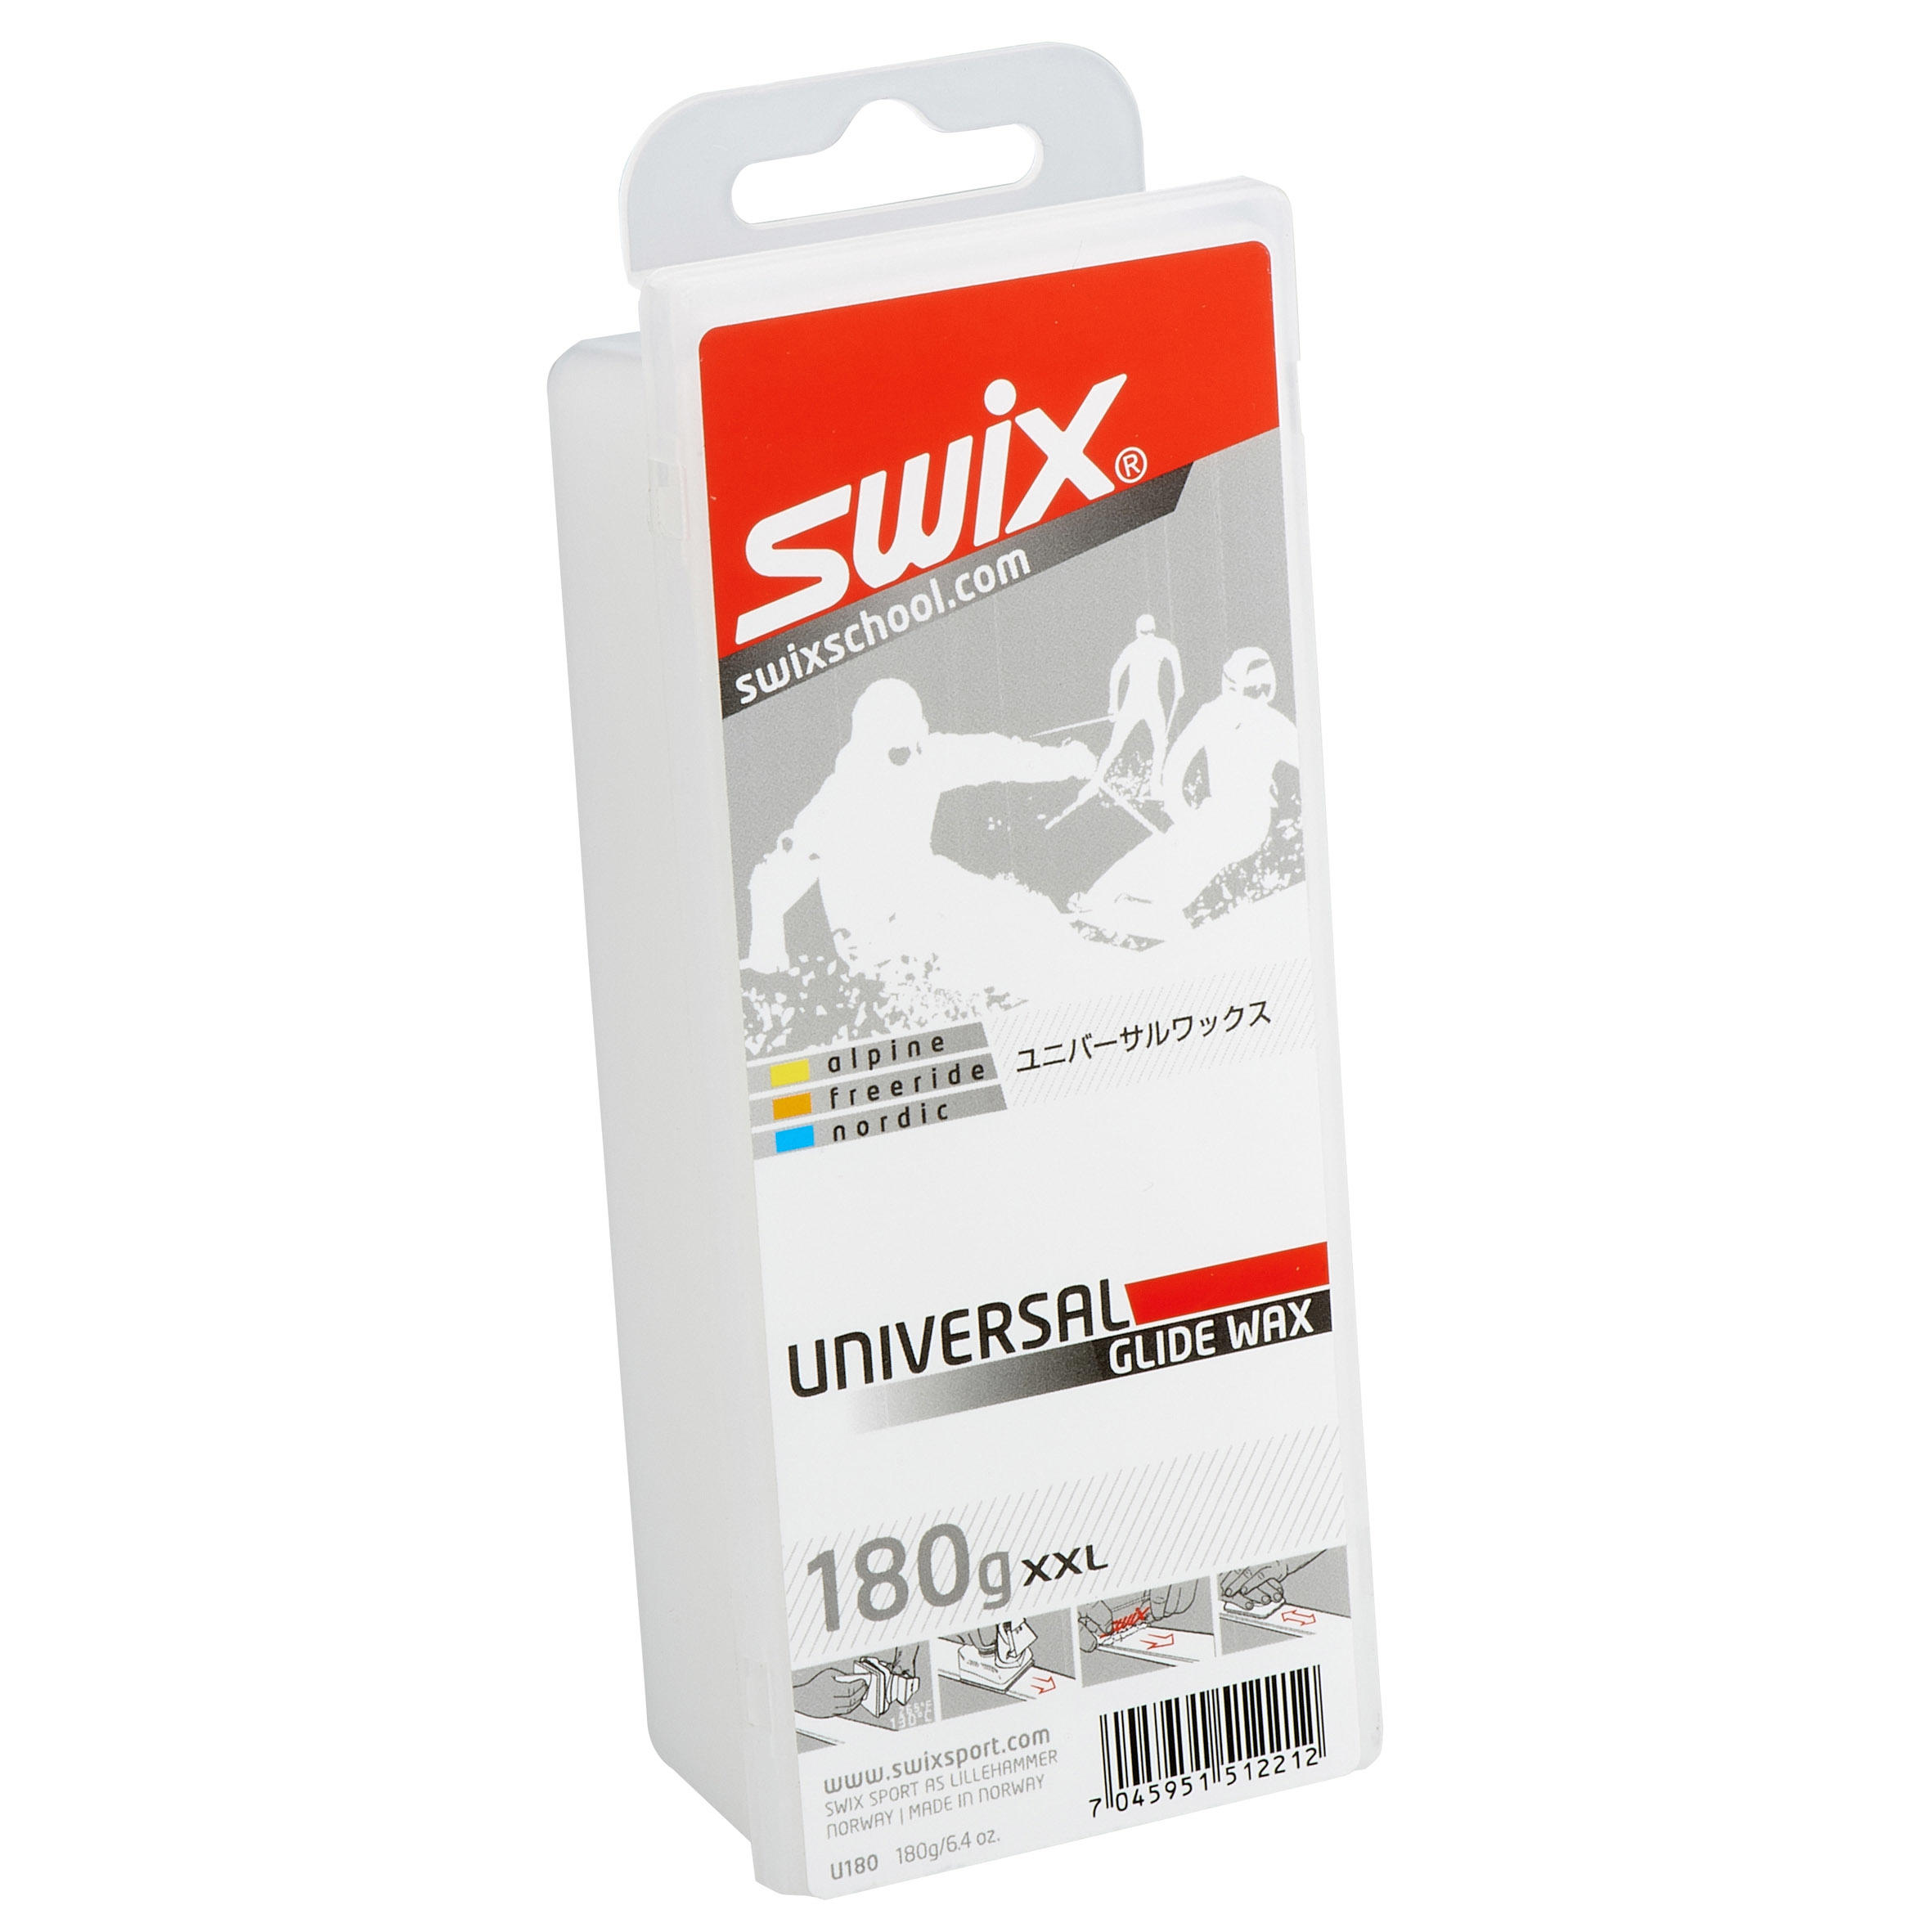 SWIX U 180 Universal Wax